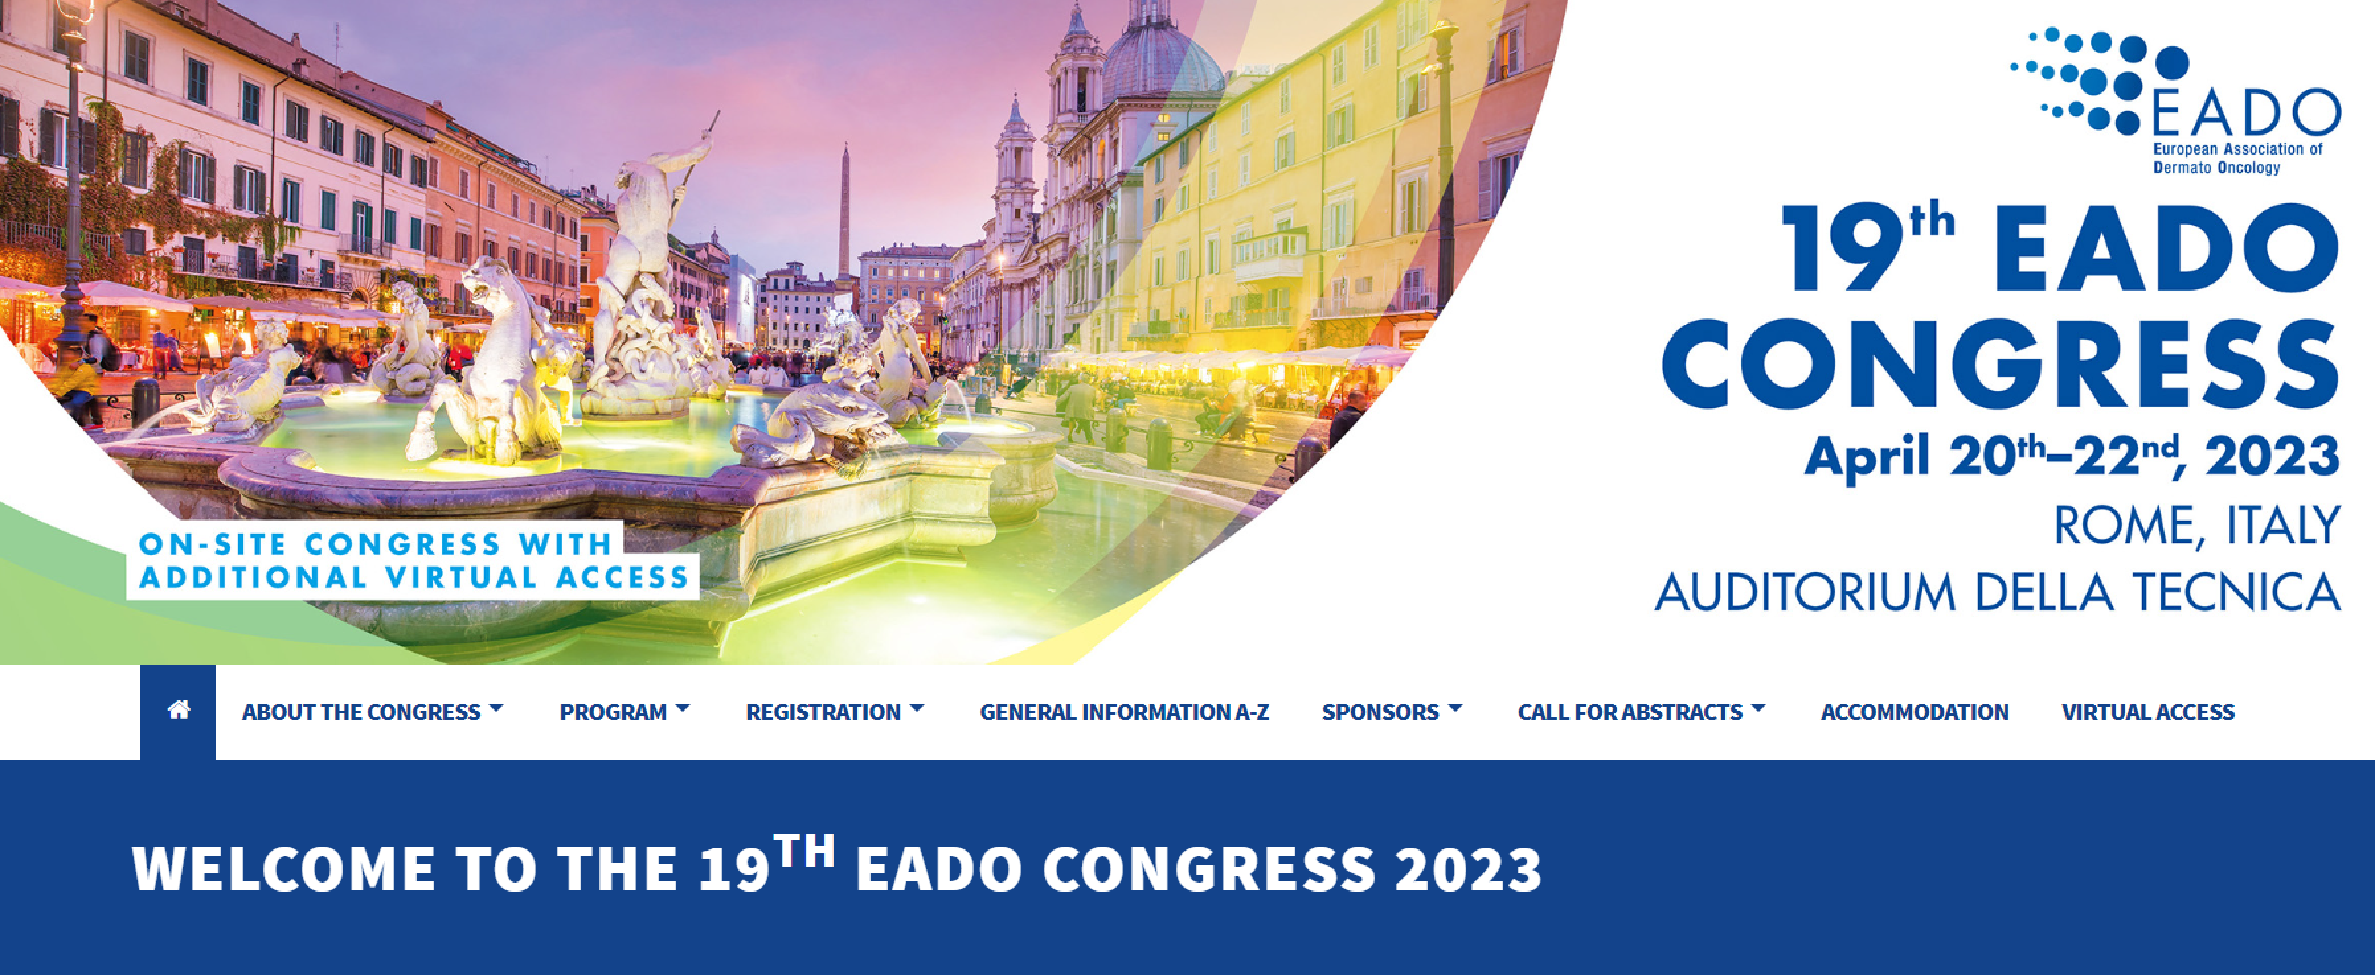 THE 19TH European Association of Dermato-Oncology CONGRESS - EADO 2023